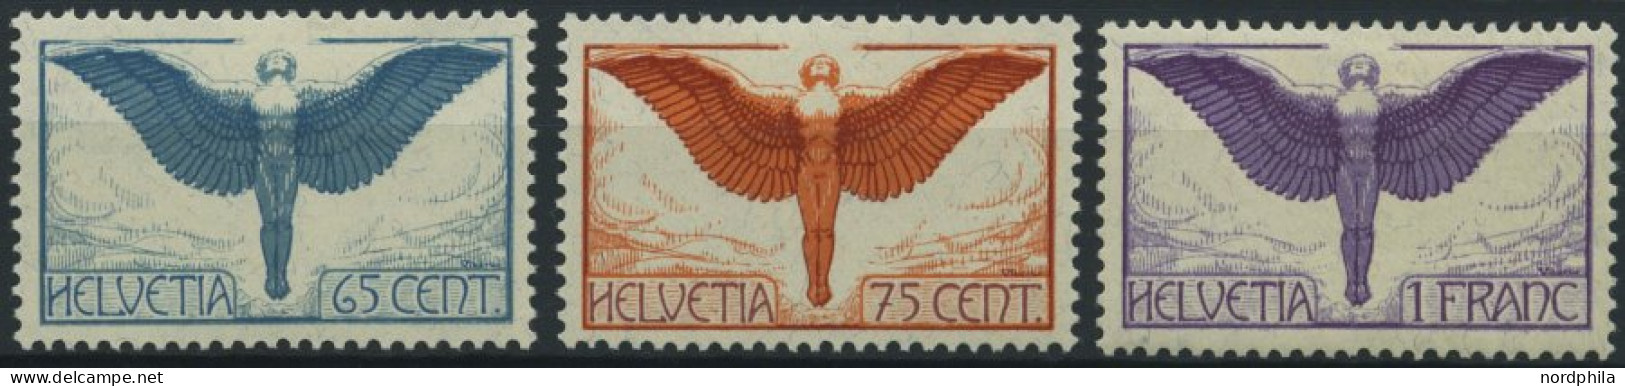 SCHWEIZ BUNDESPOST 189-91x *, 1924, Flugpostmarken, Gewöhnliches Papier, Falzrest, Prachtsatz - Ungebraucht